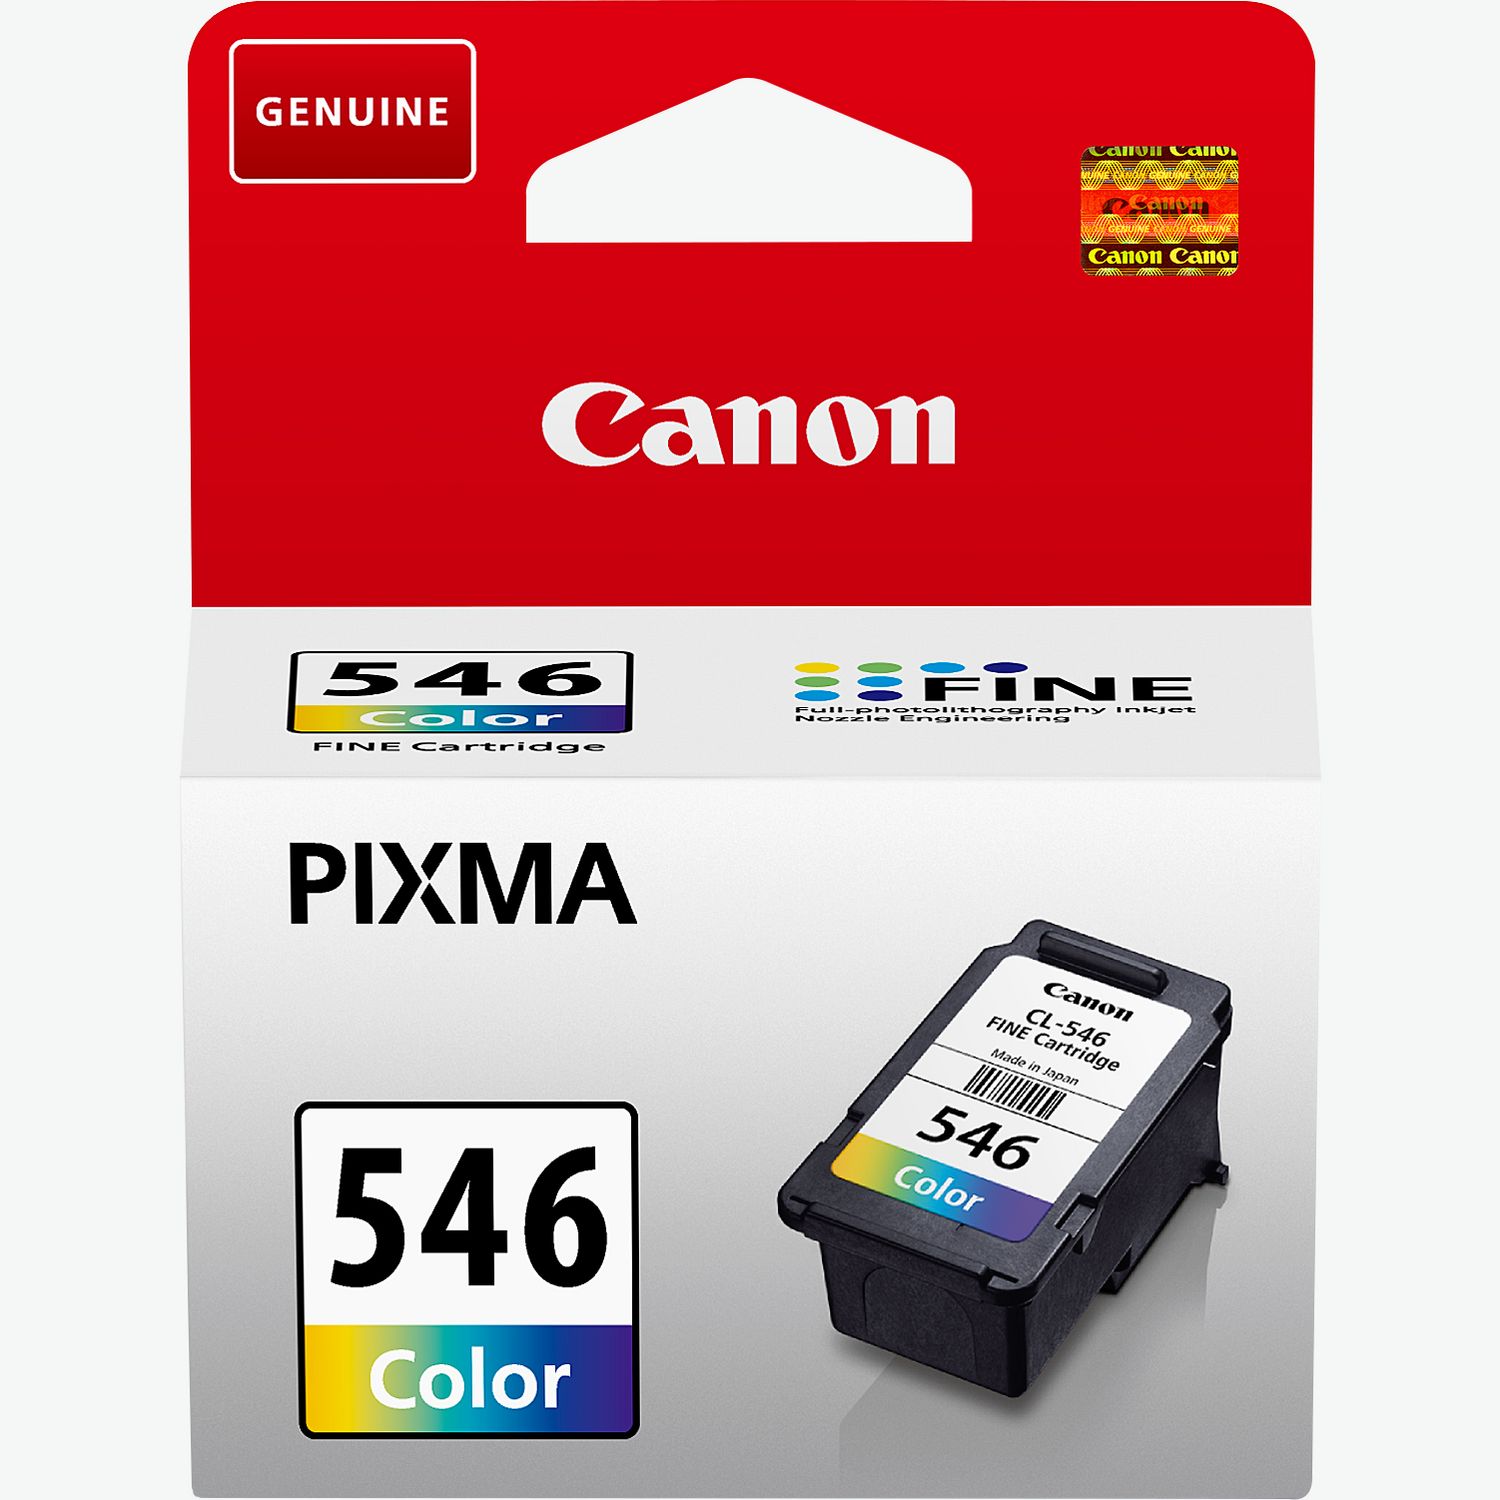 Cartouches encre compatibles avec imprimante Canon MG2555 ( PG545